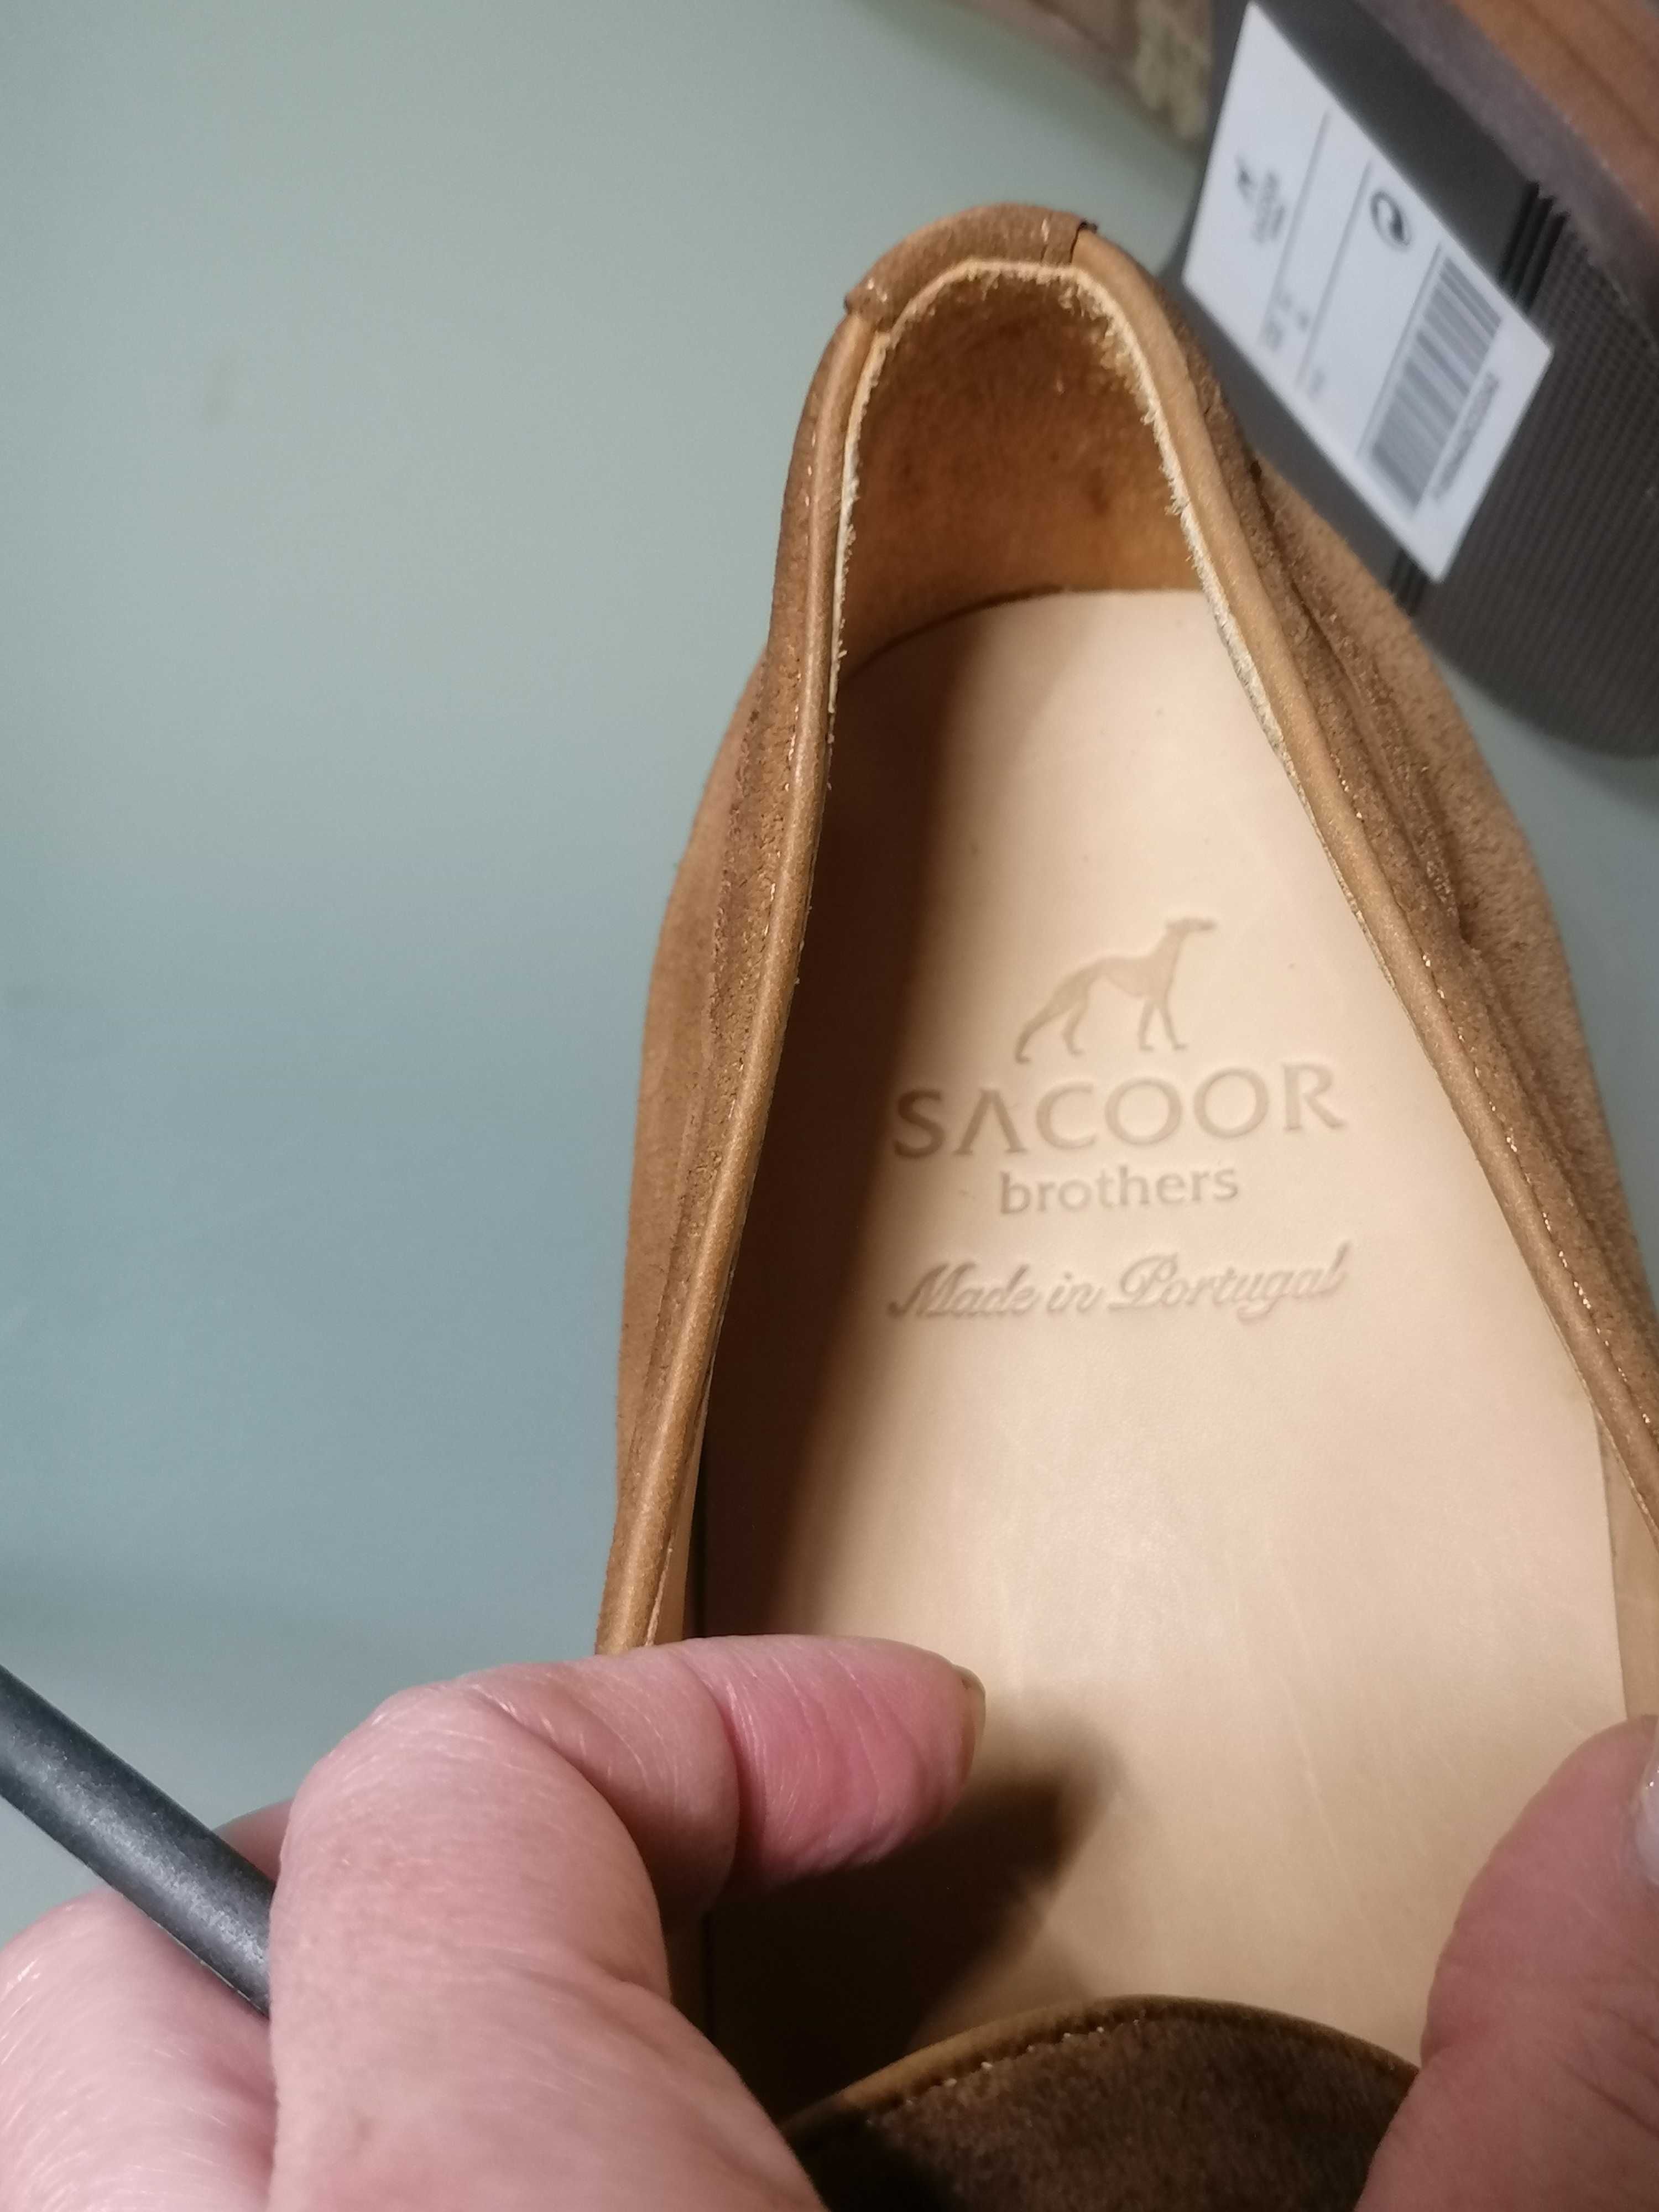 Sapato de camurça Sacoor Brothers